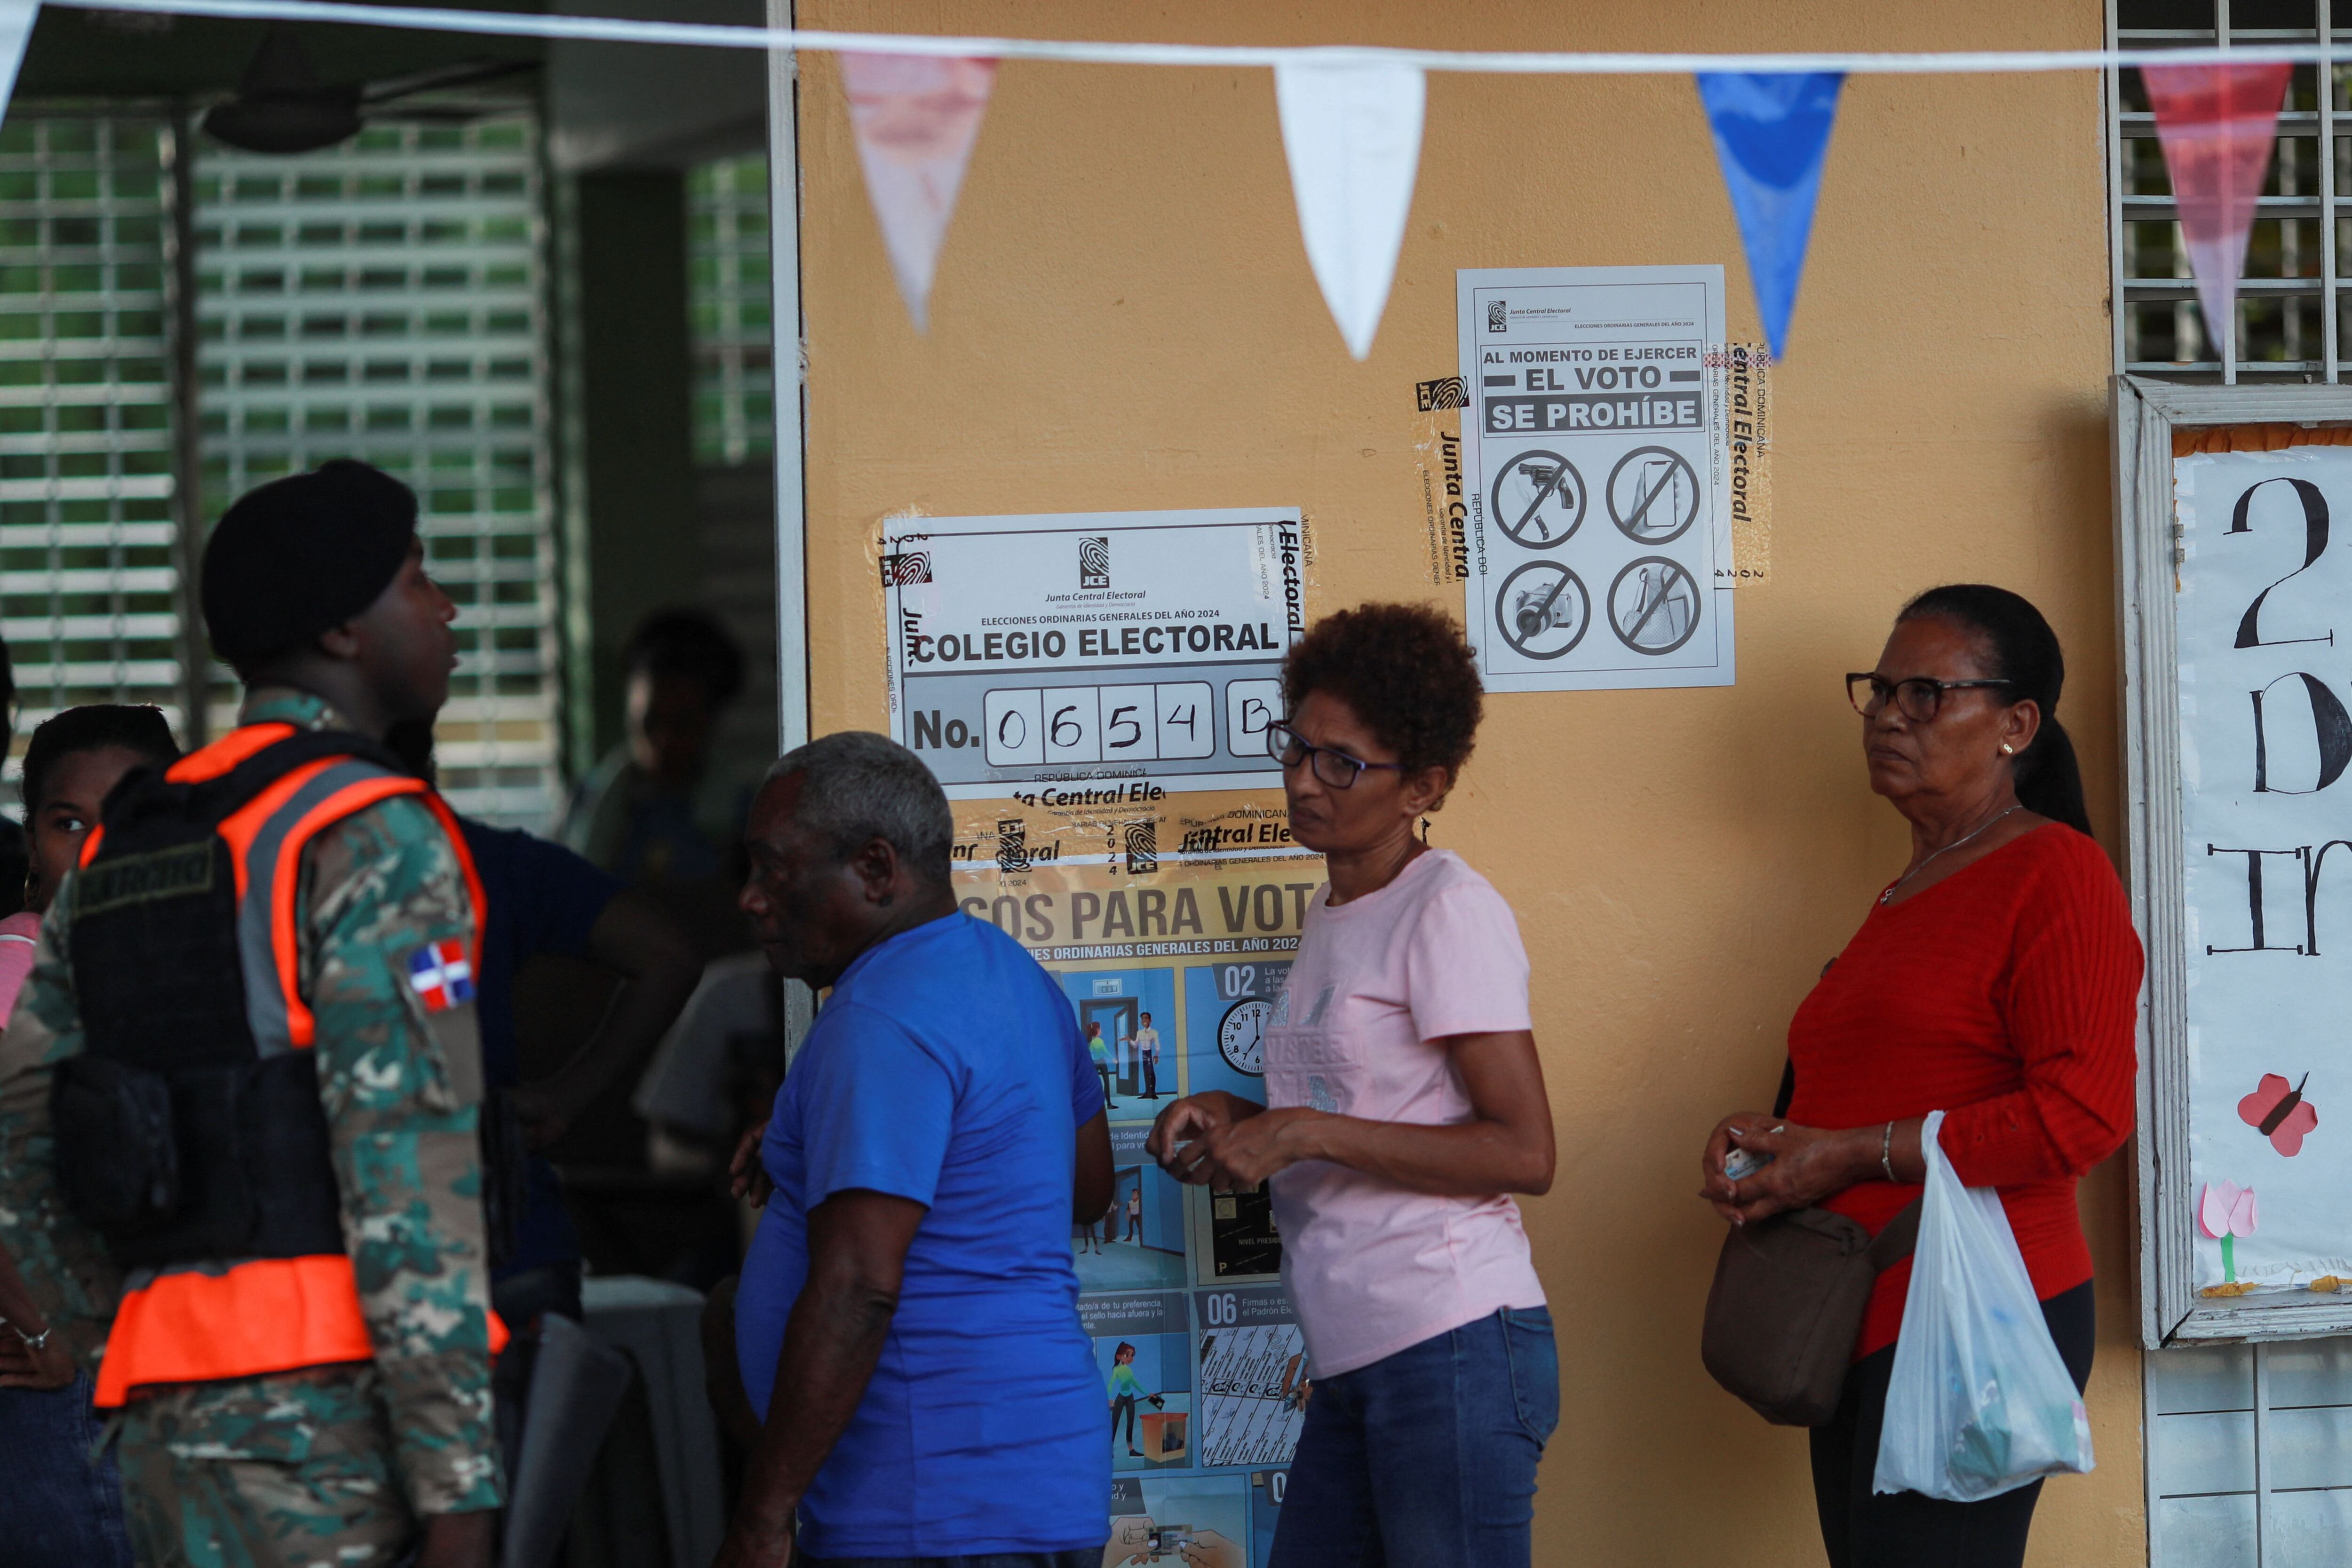 Las autoridades llamaron a los dominicanos a votar con "civismo y en paz" (REUTERS/Henry Romero)